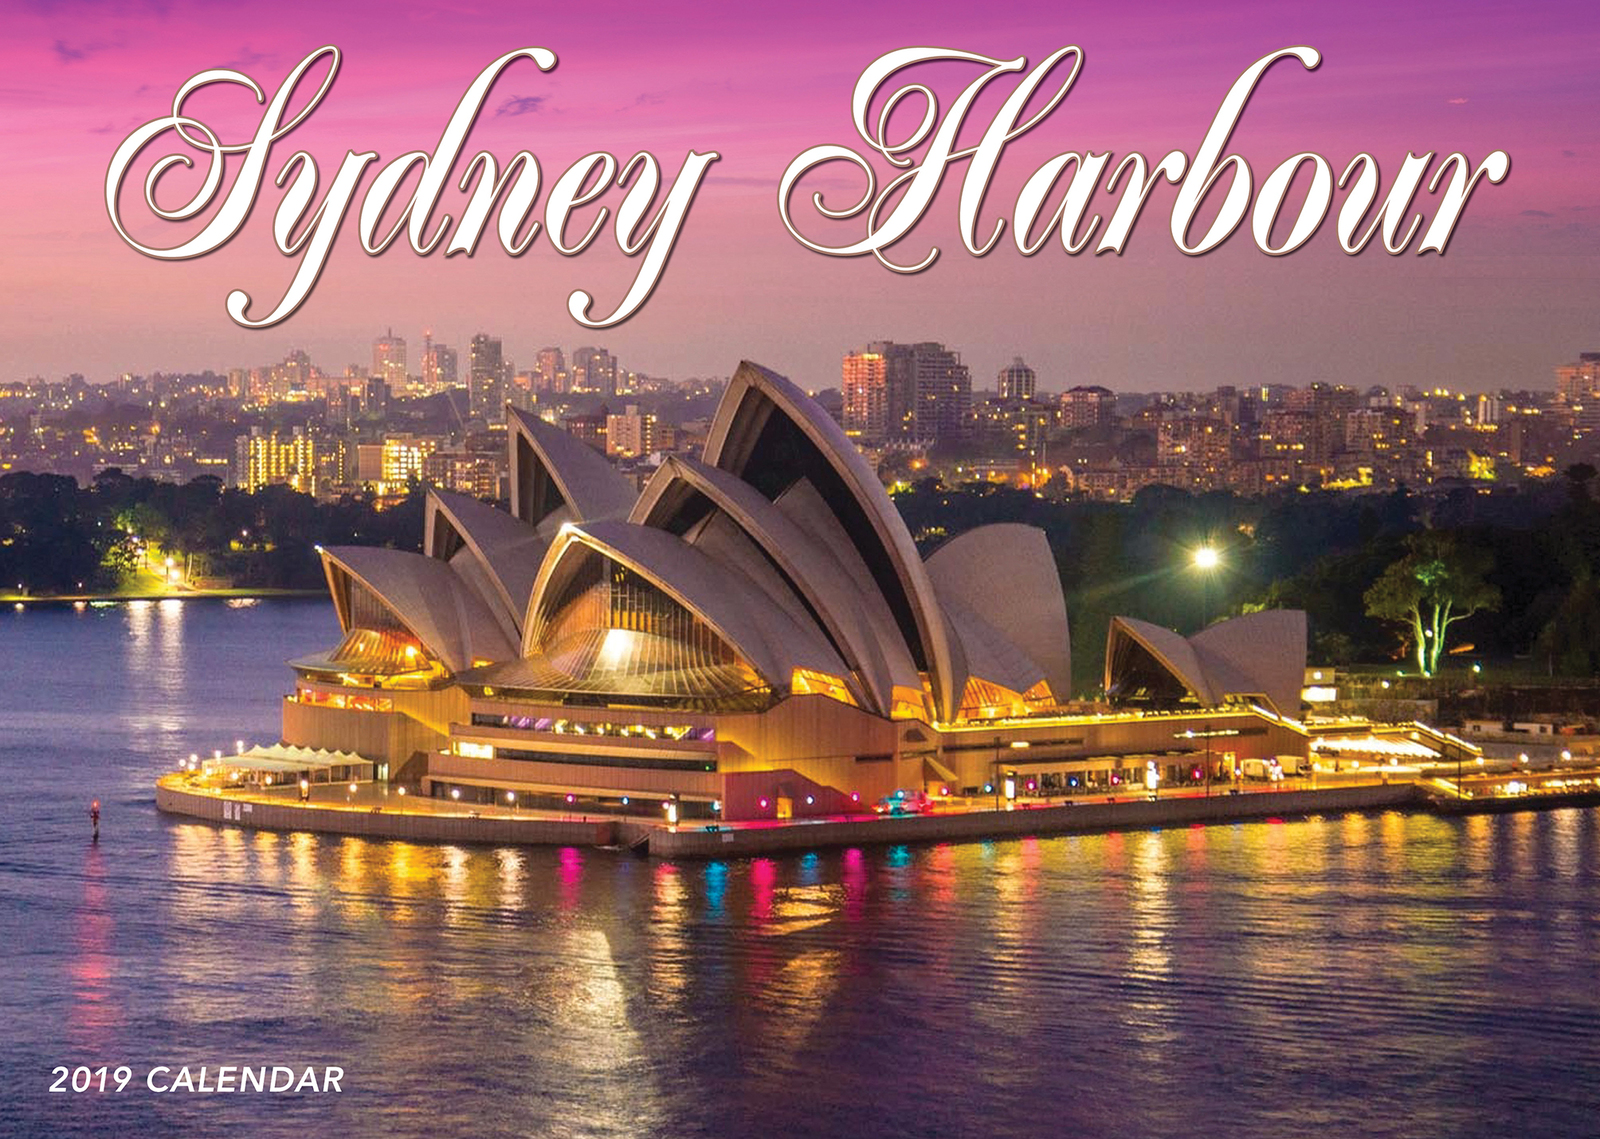 2019 Wall Calendar Sydney Harbour Calendar by Bartel NEW eBay